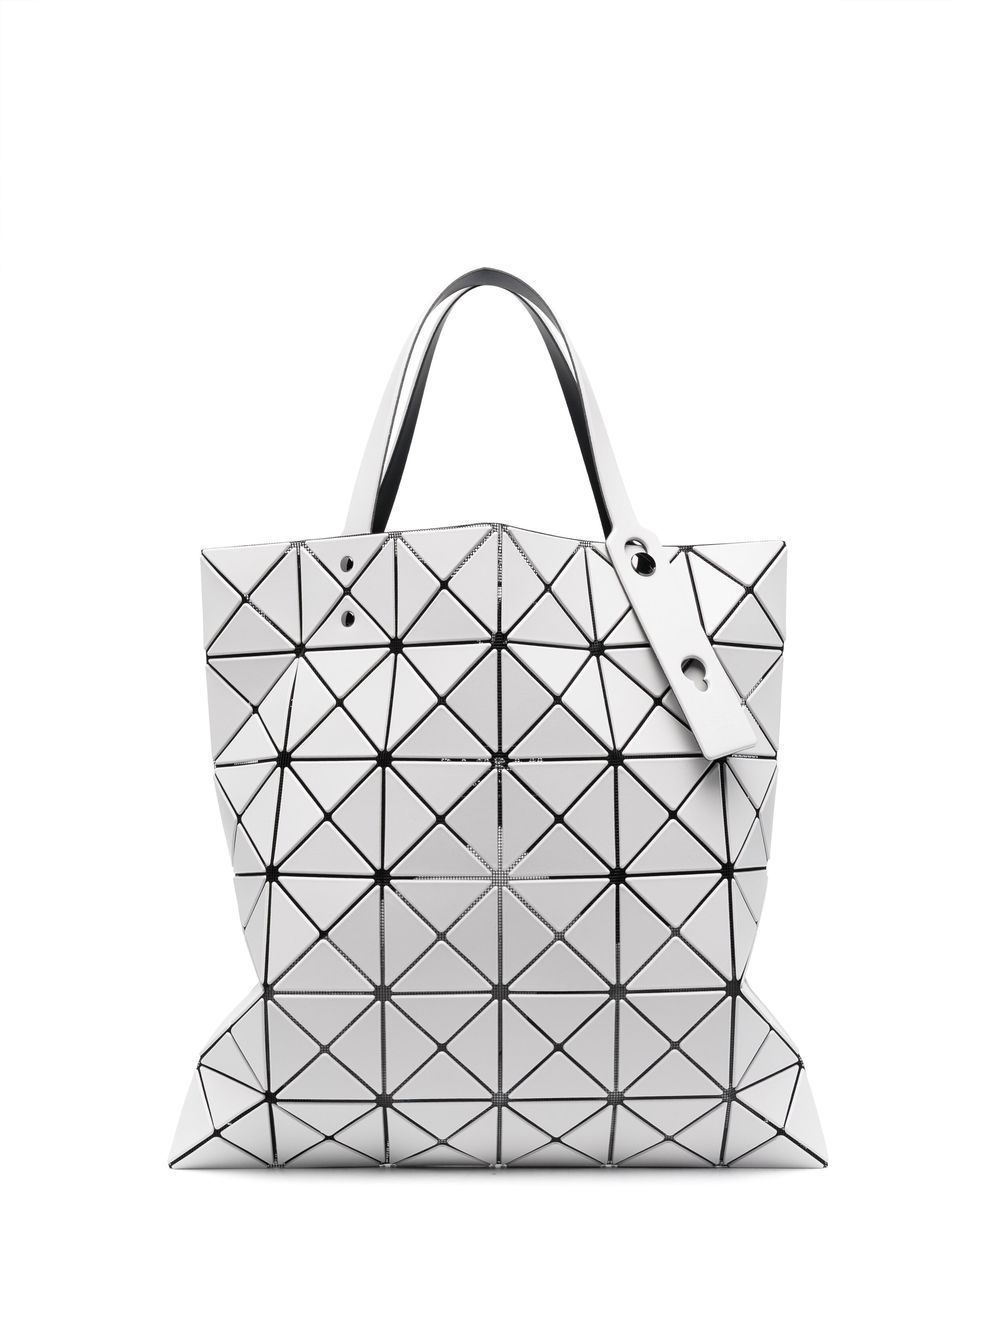 Bao Bao Issey Miyake lucent matter geometric tote bag - Grey von Bao Bao Issey Miyake